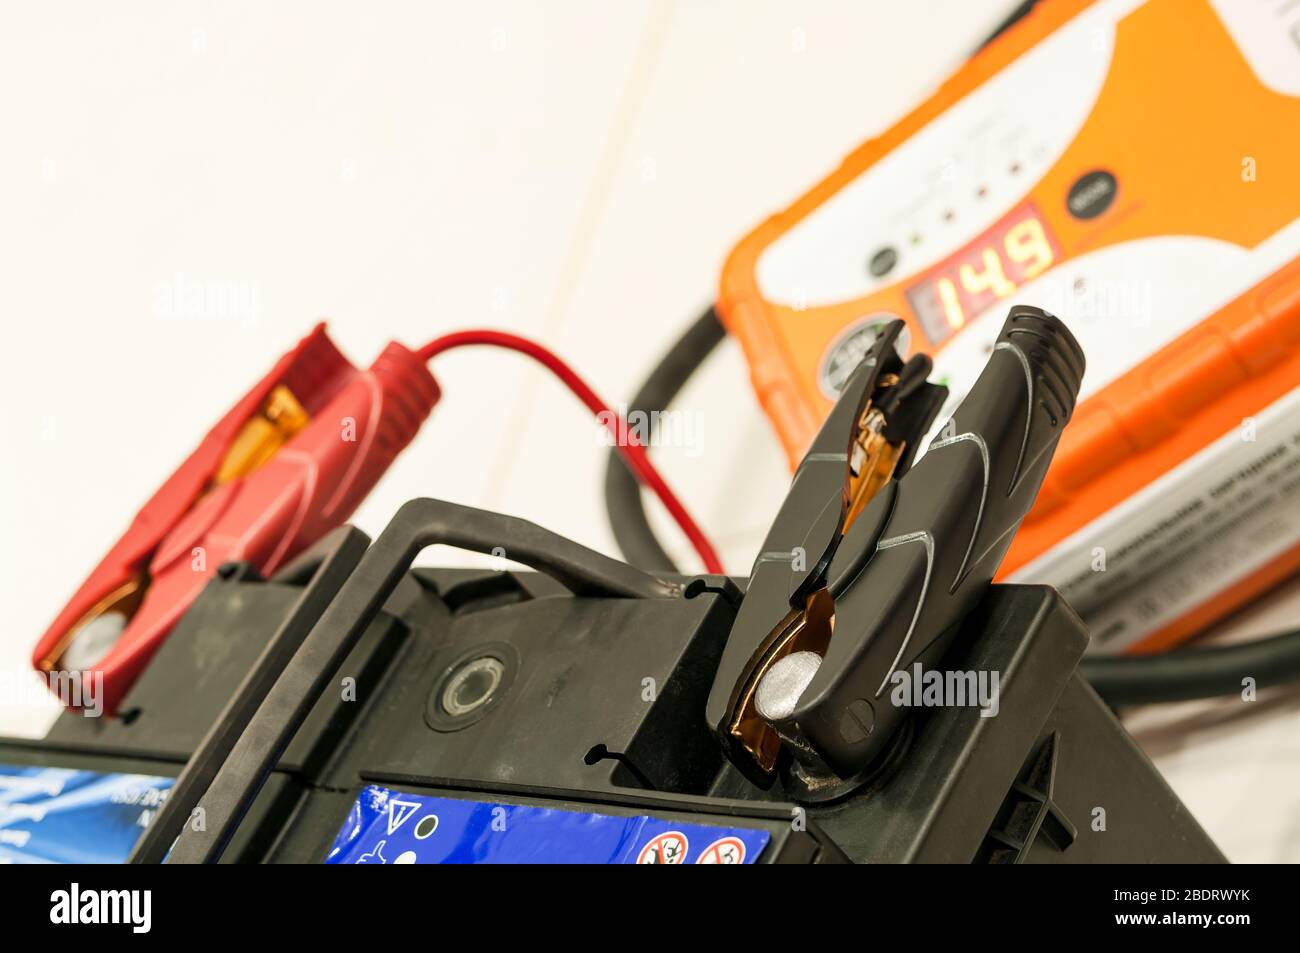 Las pinzas de la batería y cargador de coche plug Fotografía de stock -  Alamy